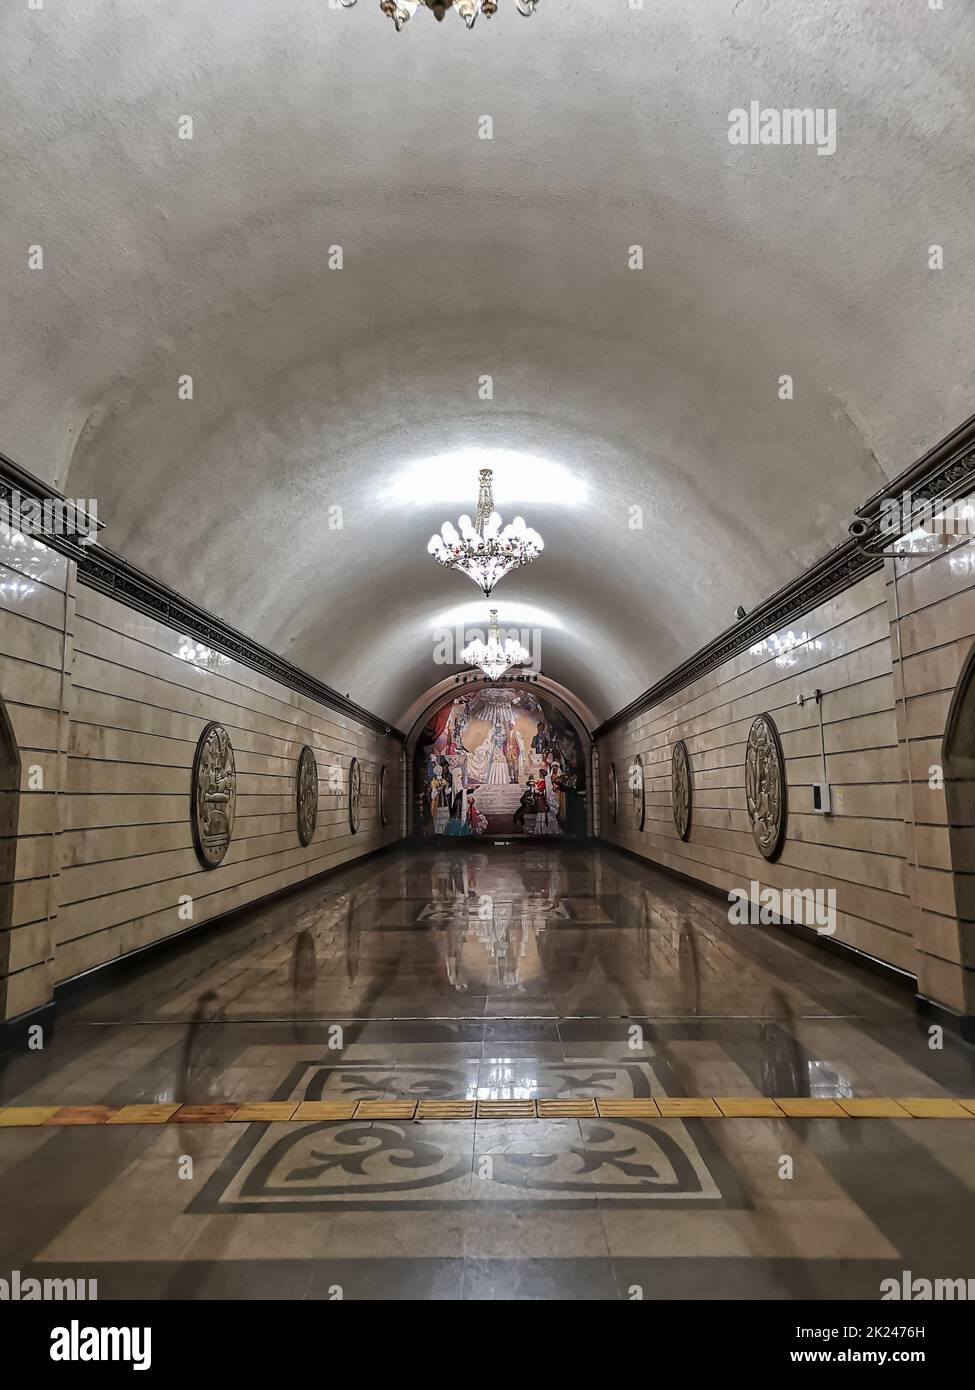 ALMATY, KAZAKHSTAN - NOVEMBER 8, 2019: Auezov Theater Almaty Metro subway Station. Stock Photo